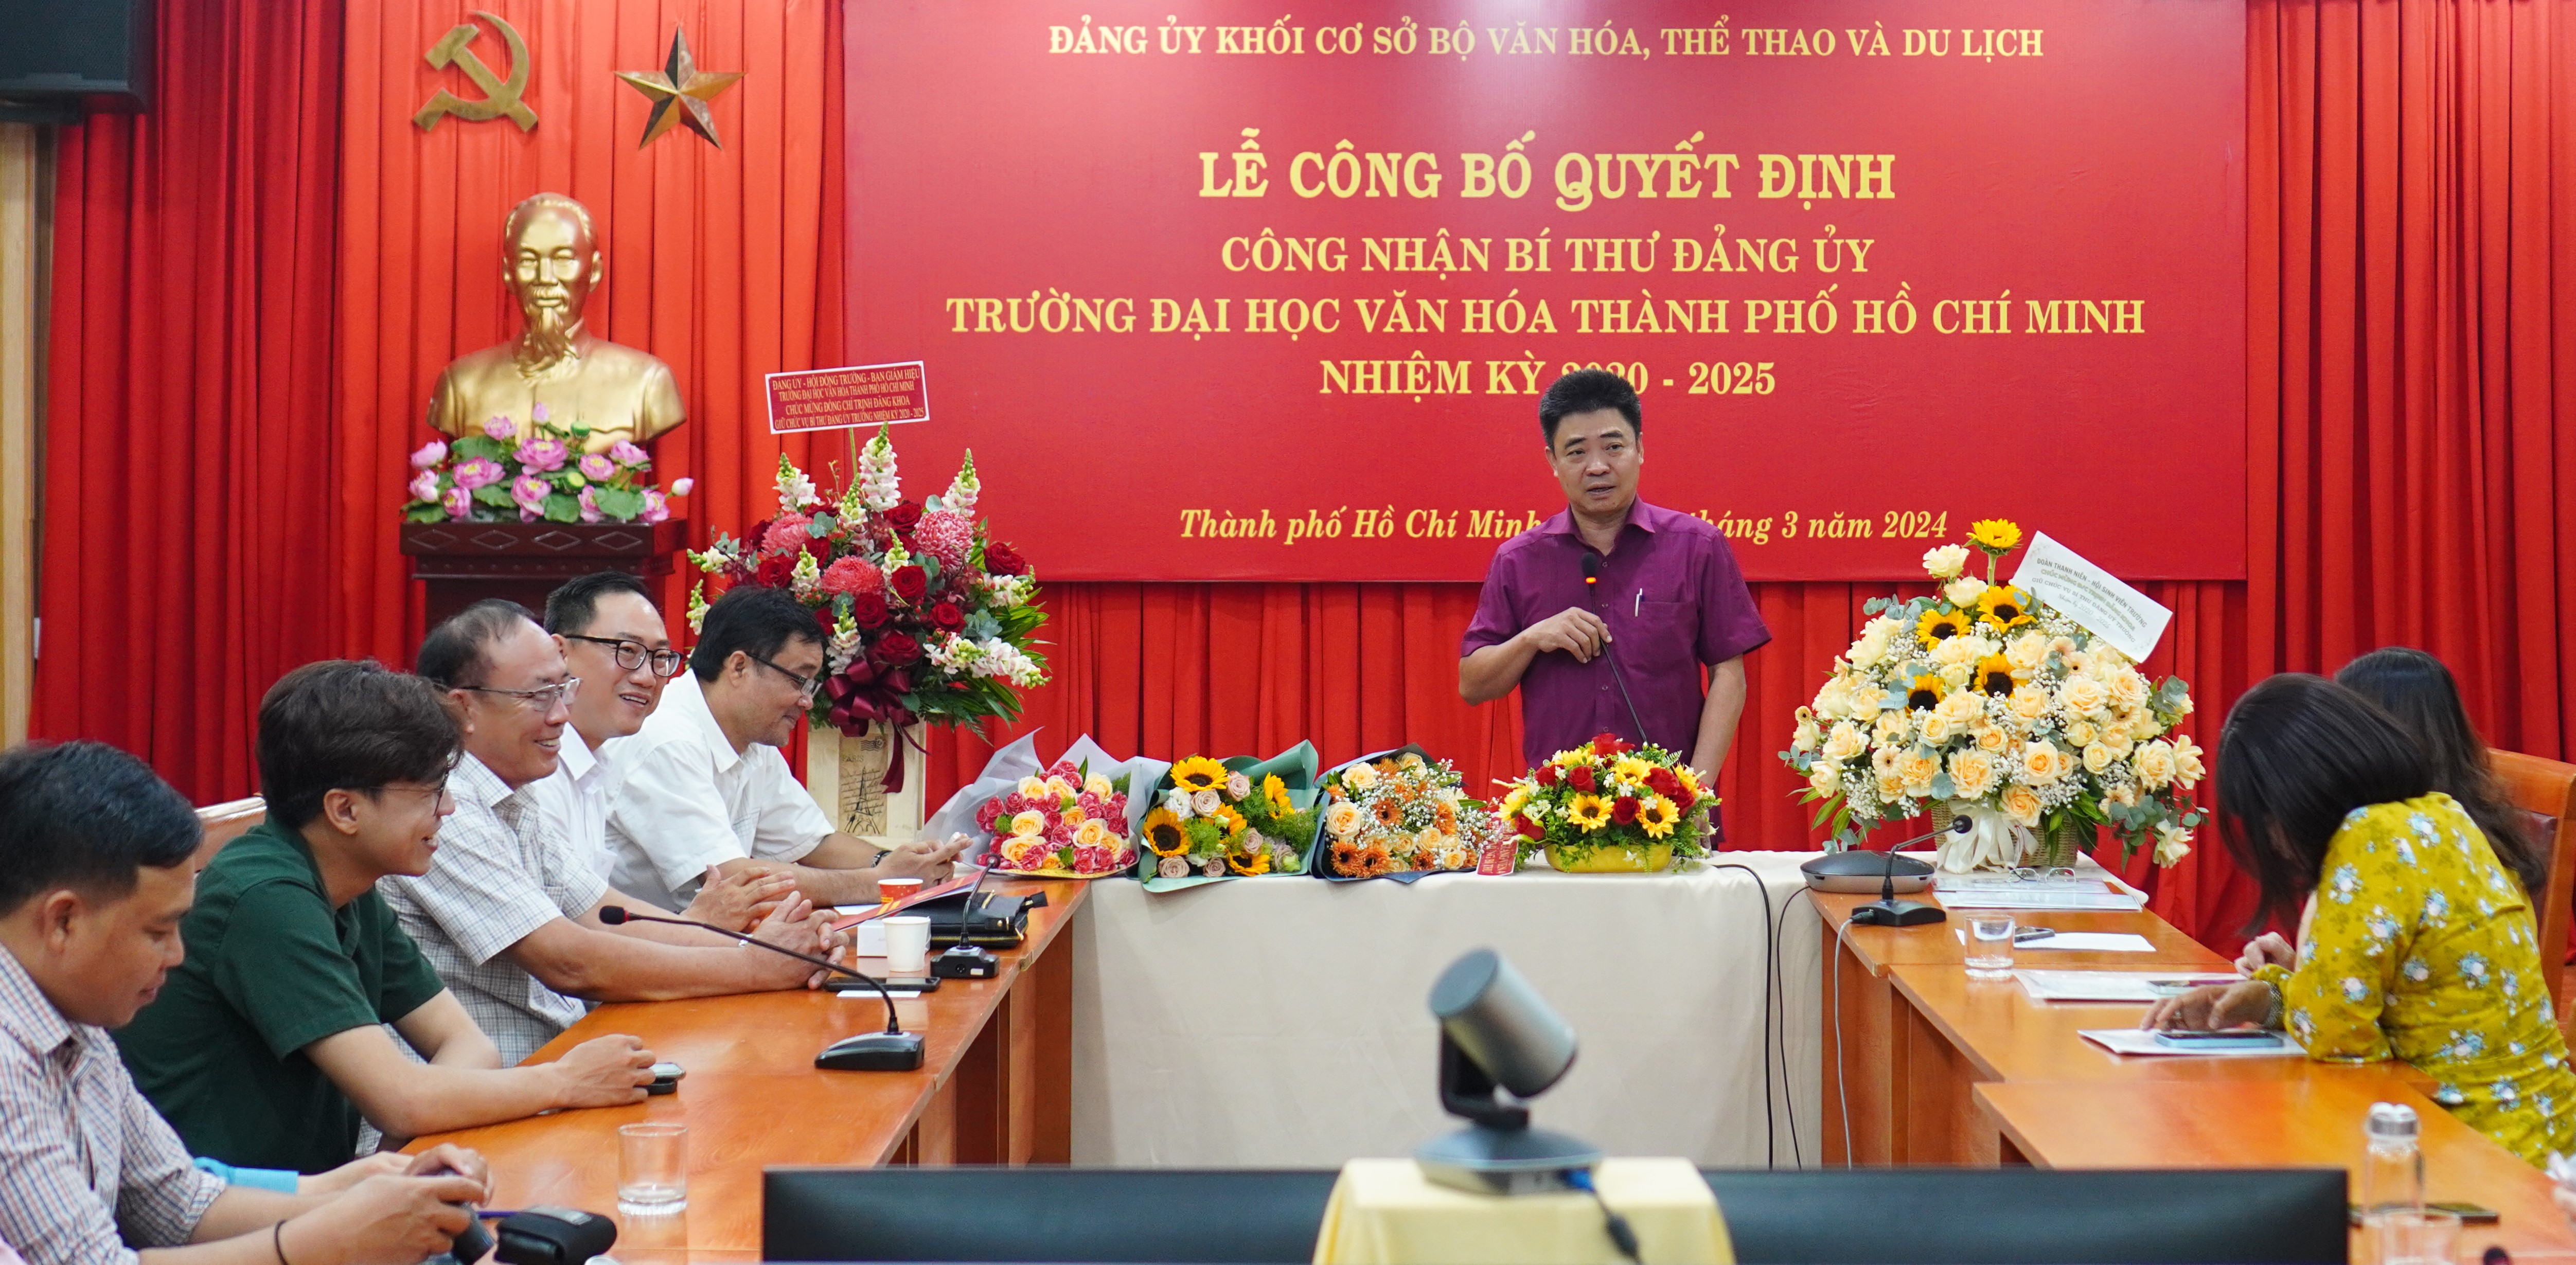 Tiến sĩ Trịnh Đăng Khoa tân Bí thư Đảng ủy Trường Đại học Văn hóa Thành phố Hồ Chí Minh nhiệm kỳ 2020 - 2025